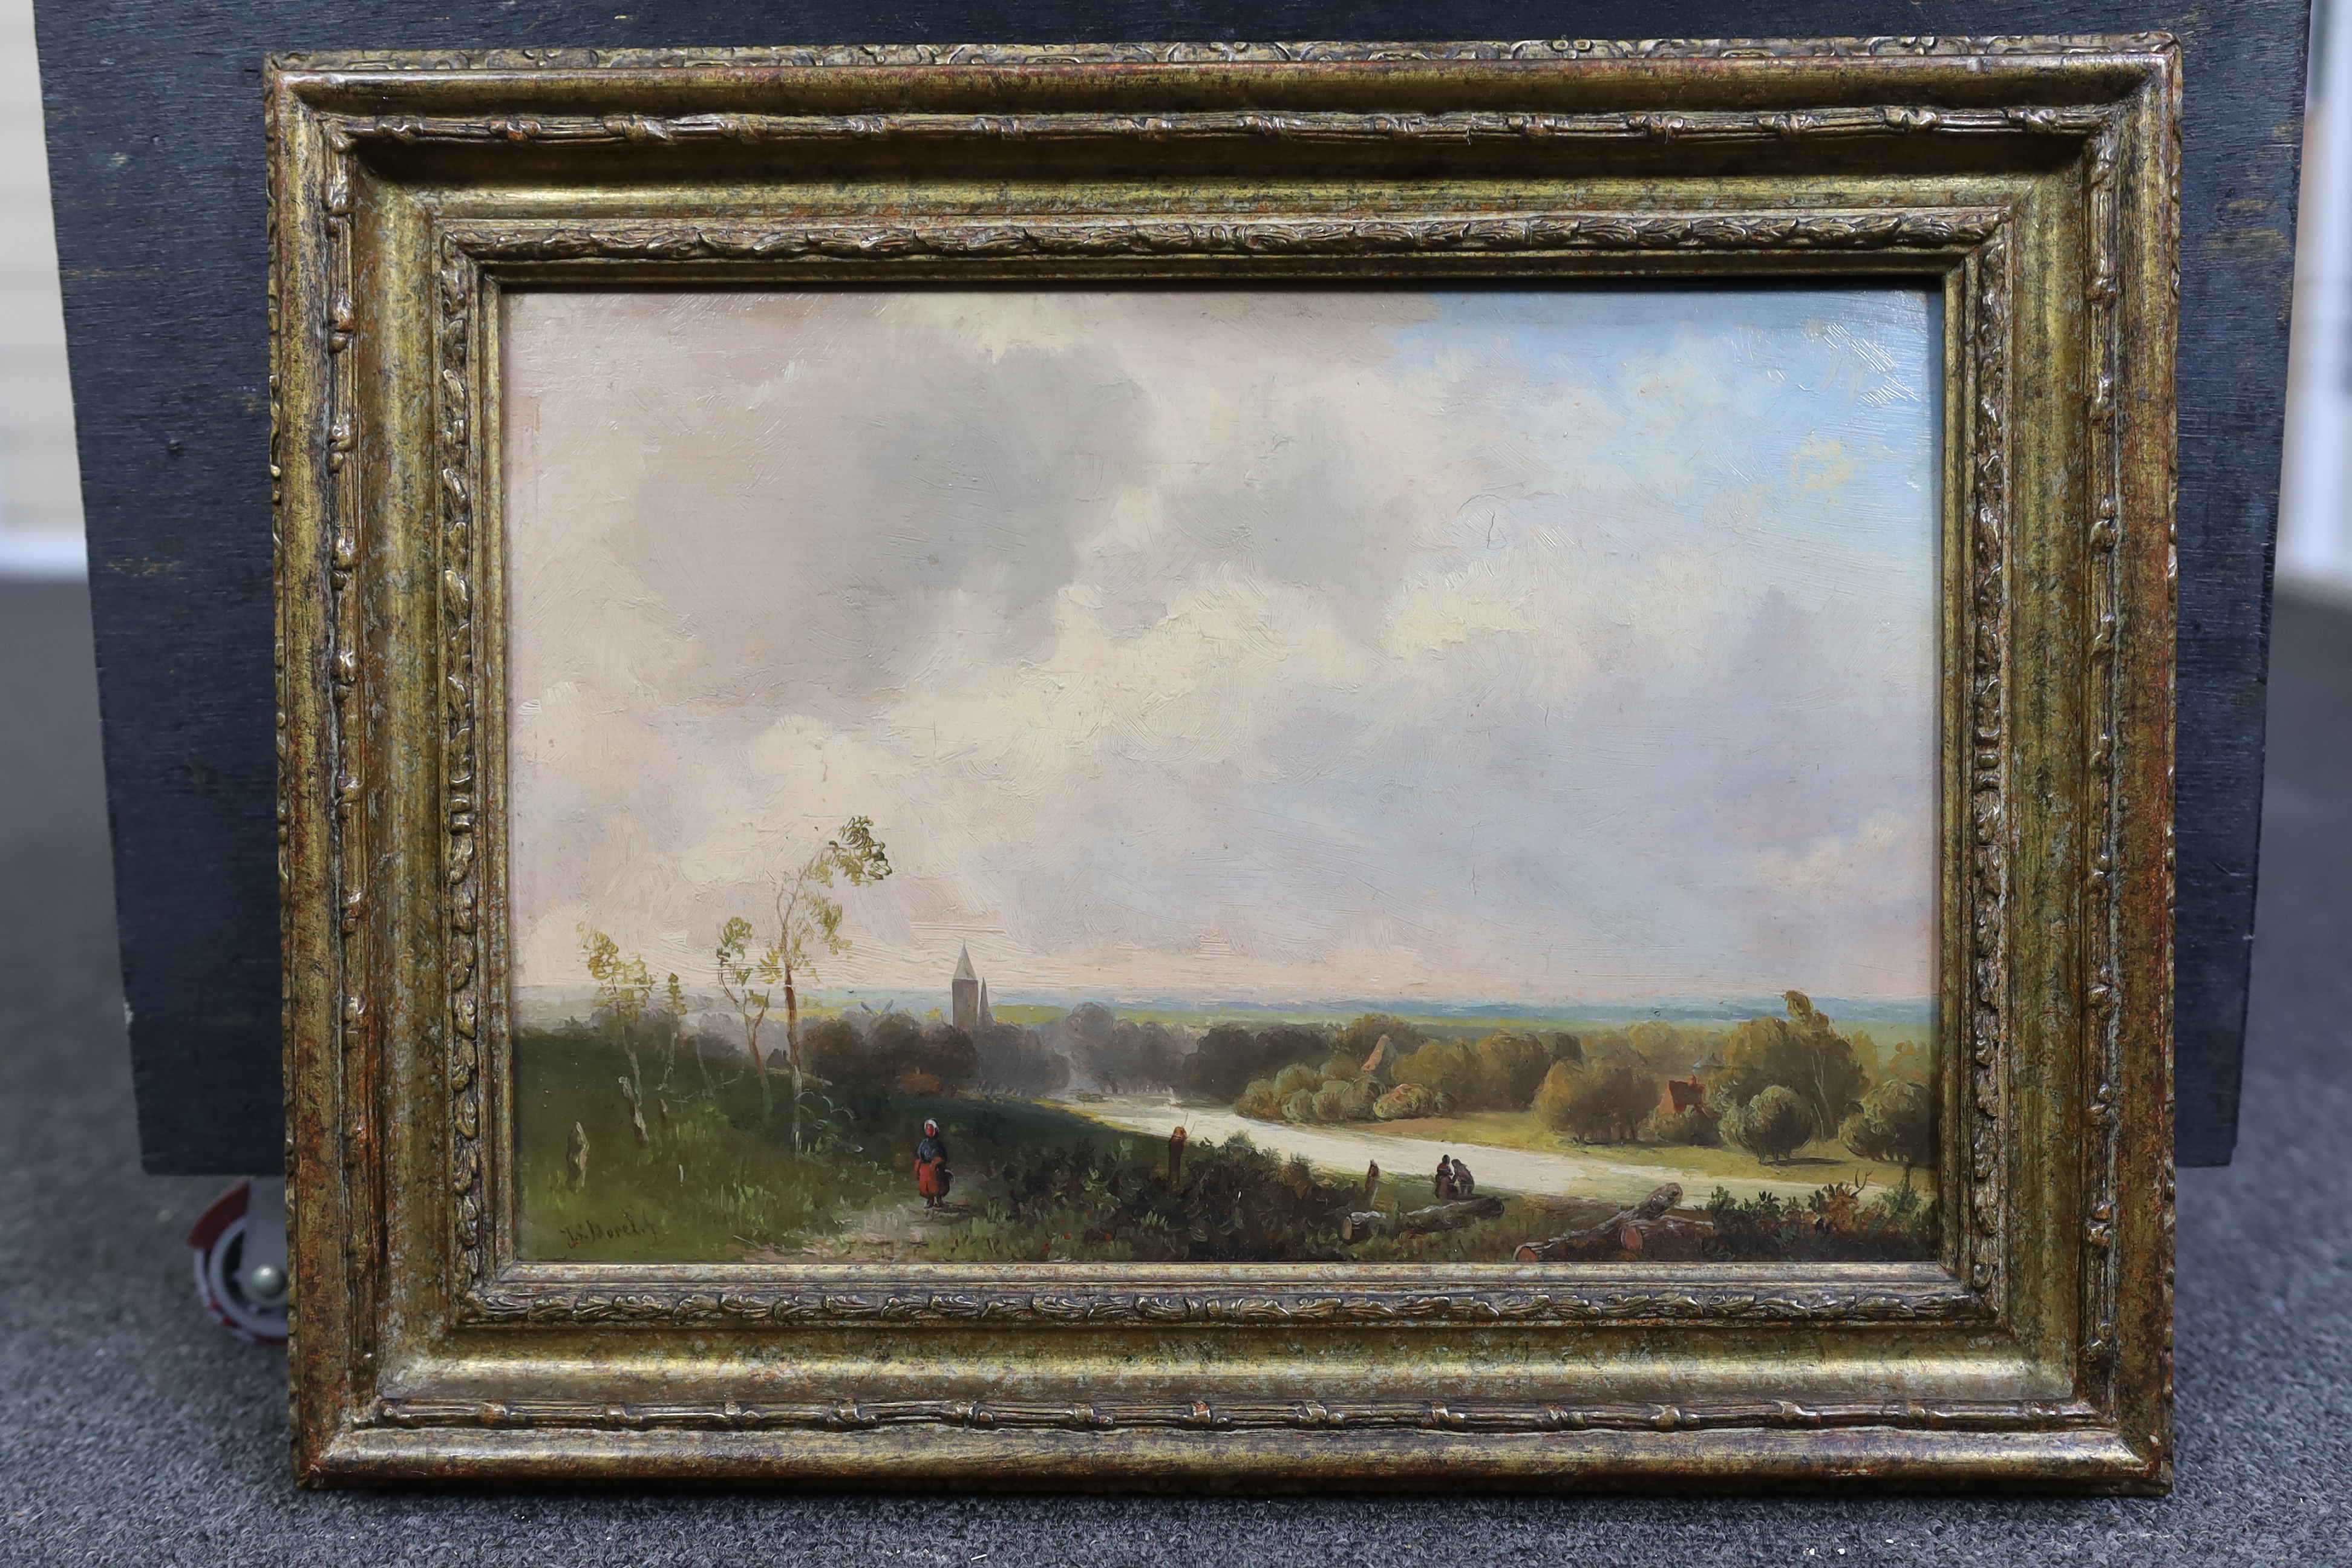 Jan Evert Morel II (Dutch, 1835-1905), Figures in an open landscape, oil on oak panel, 22 x 32cm